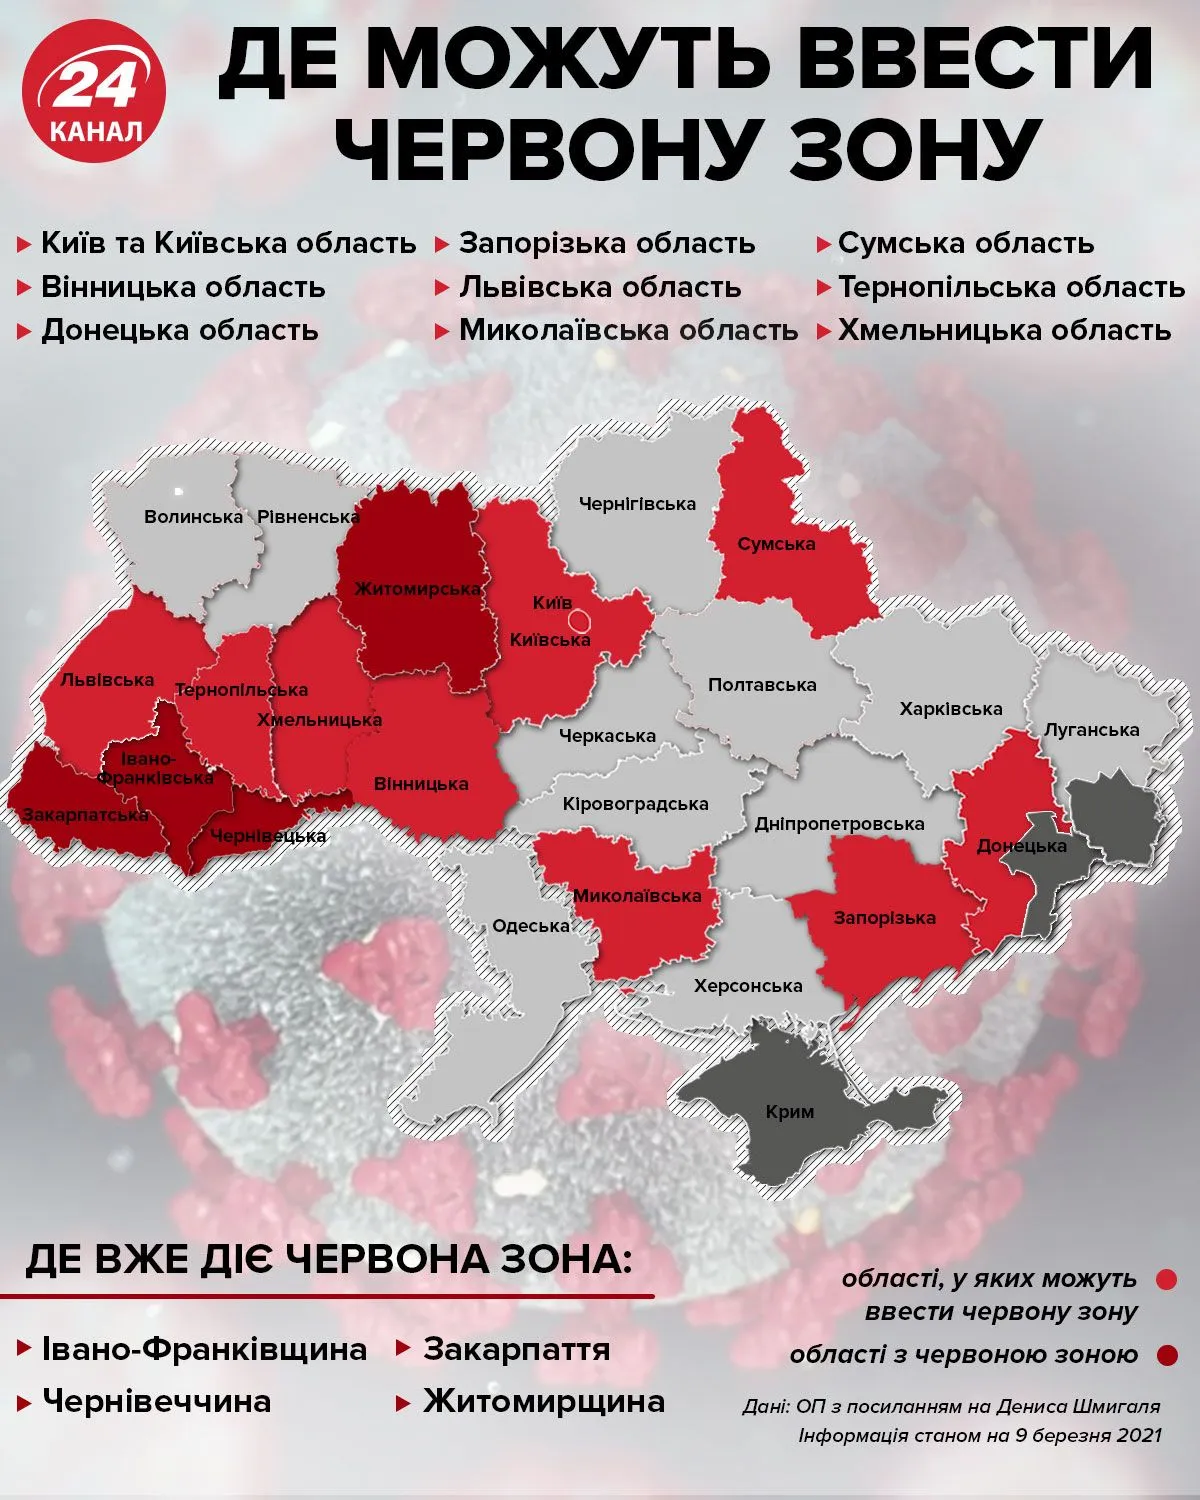 Де в Україні можуть ввести червону зону інфографіка 24 каналу